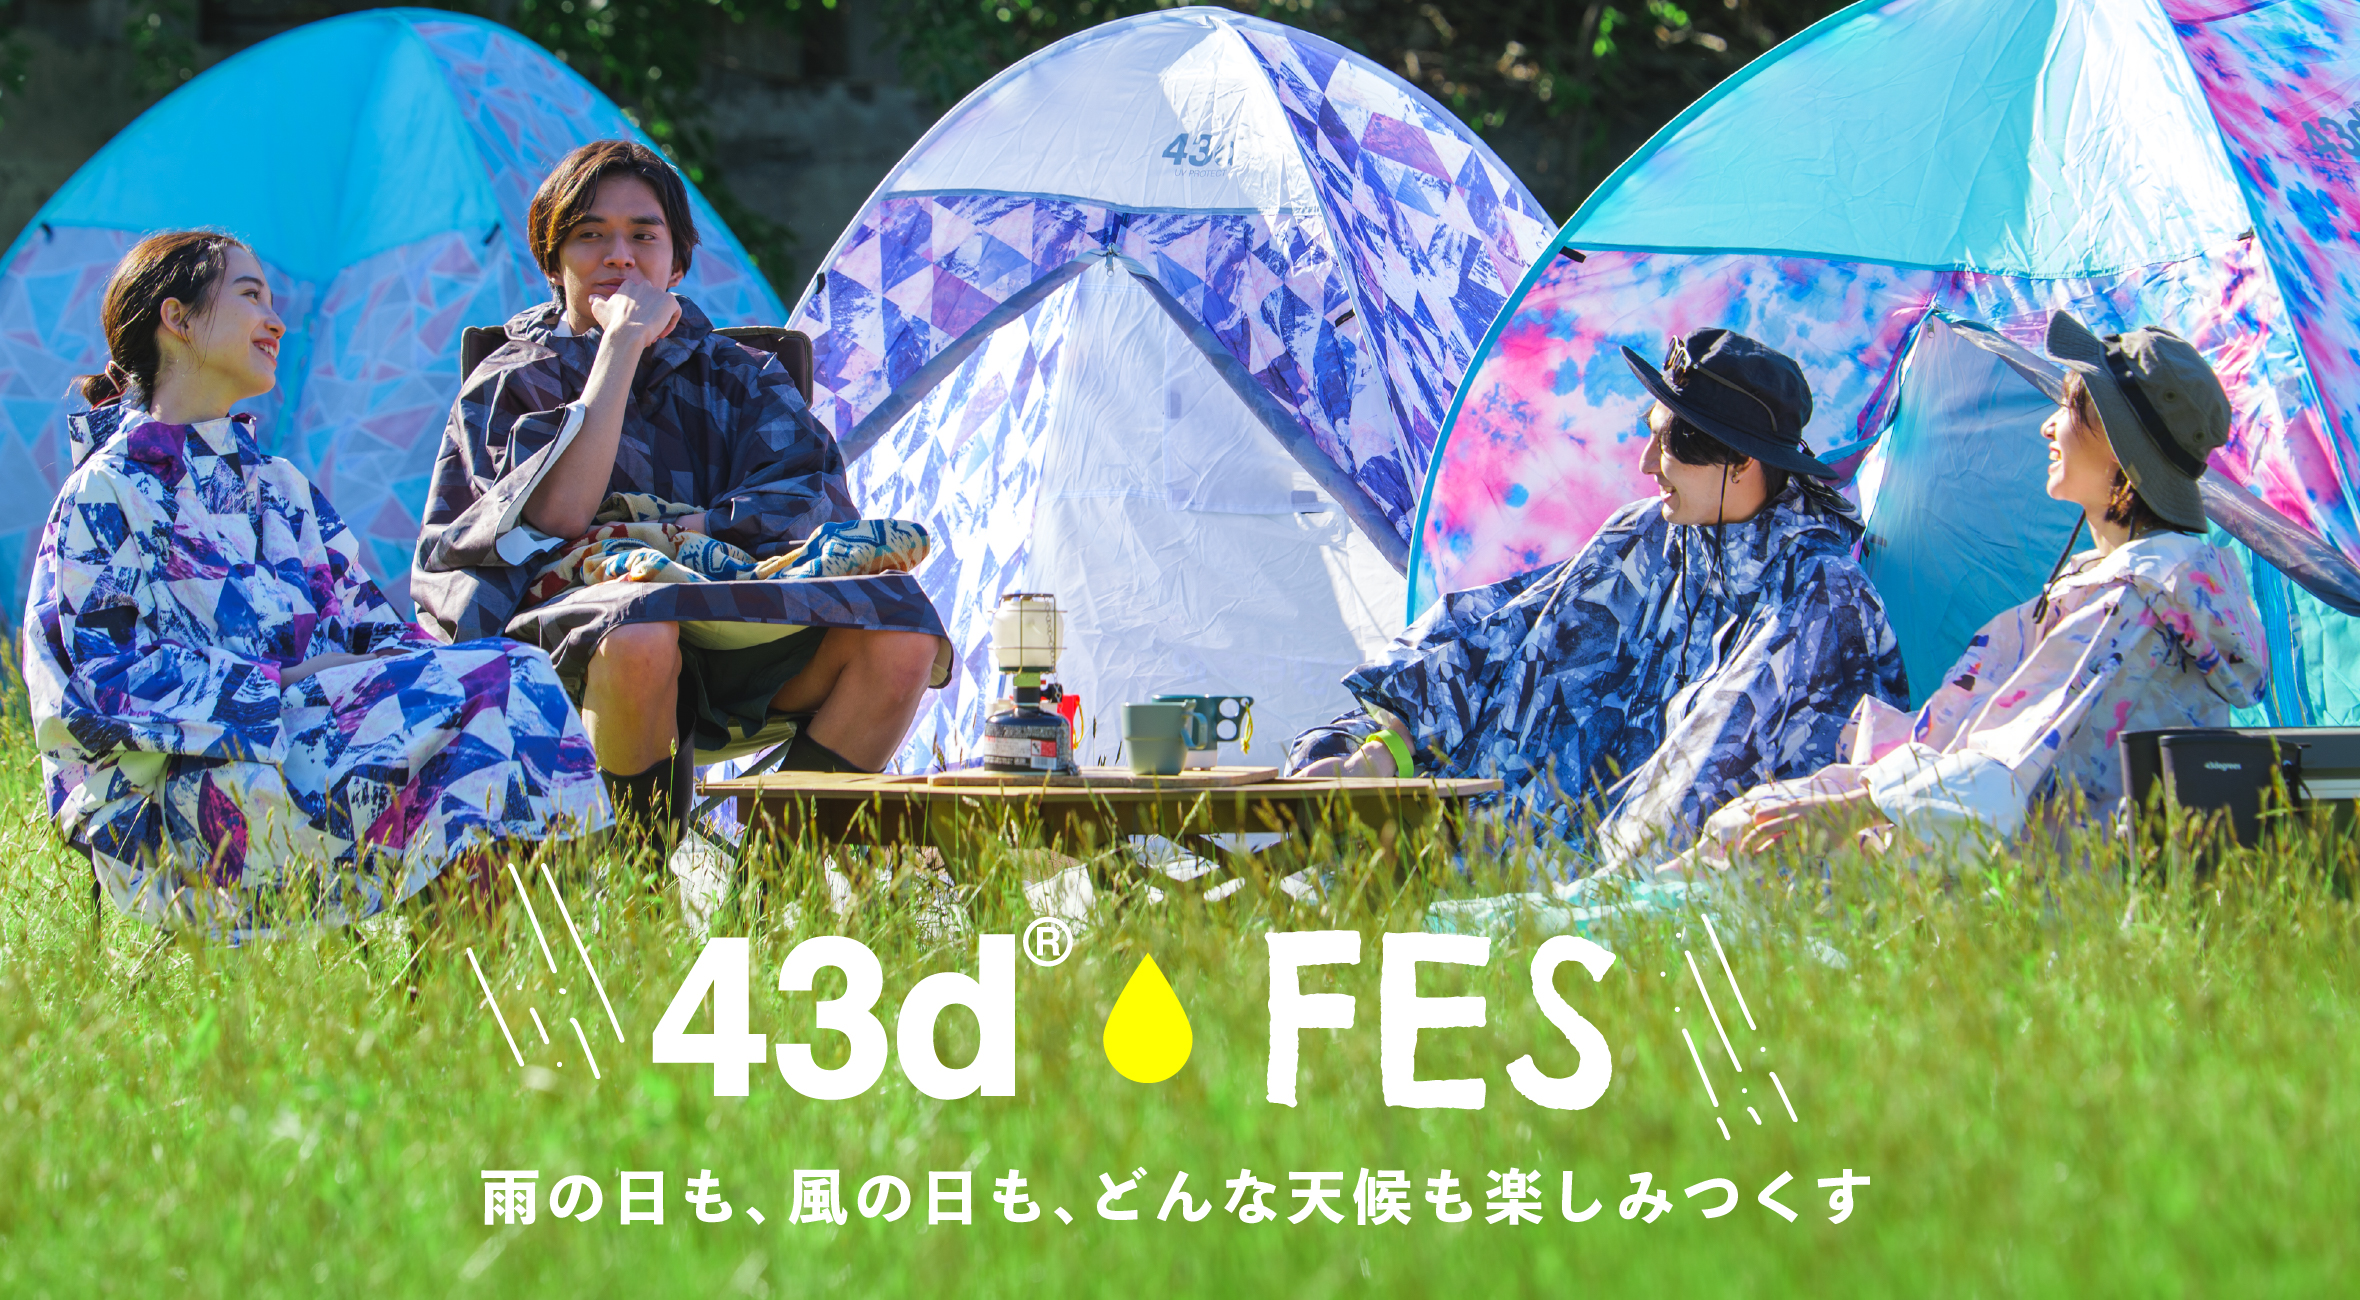 43Degrees × FES